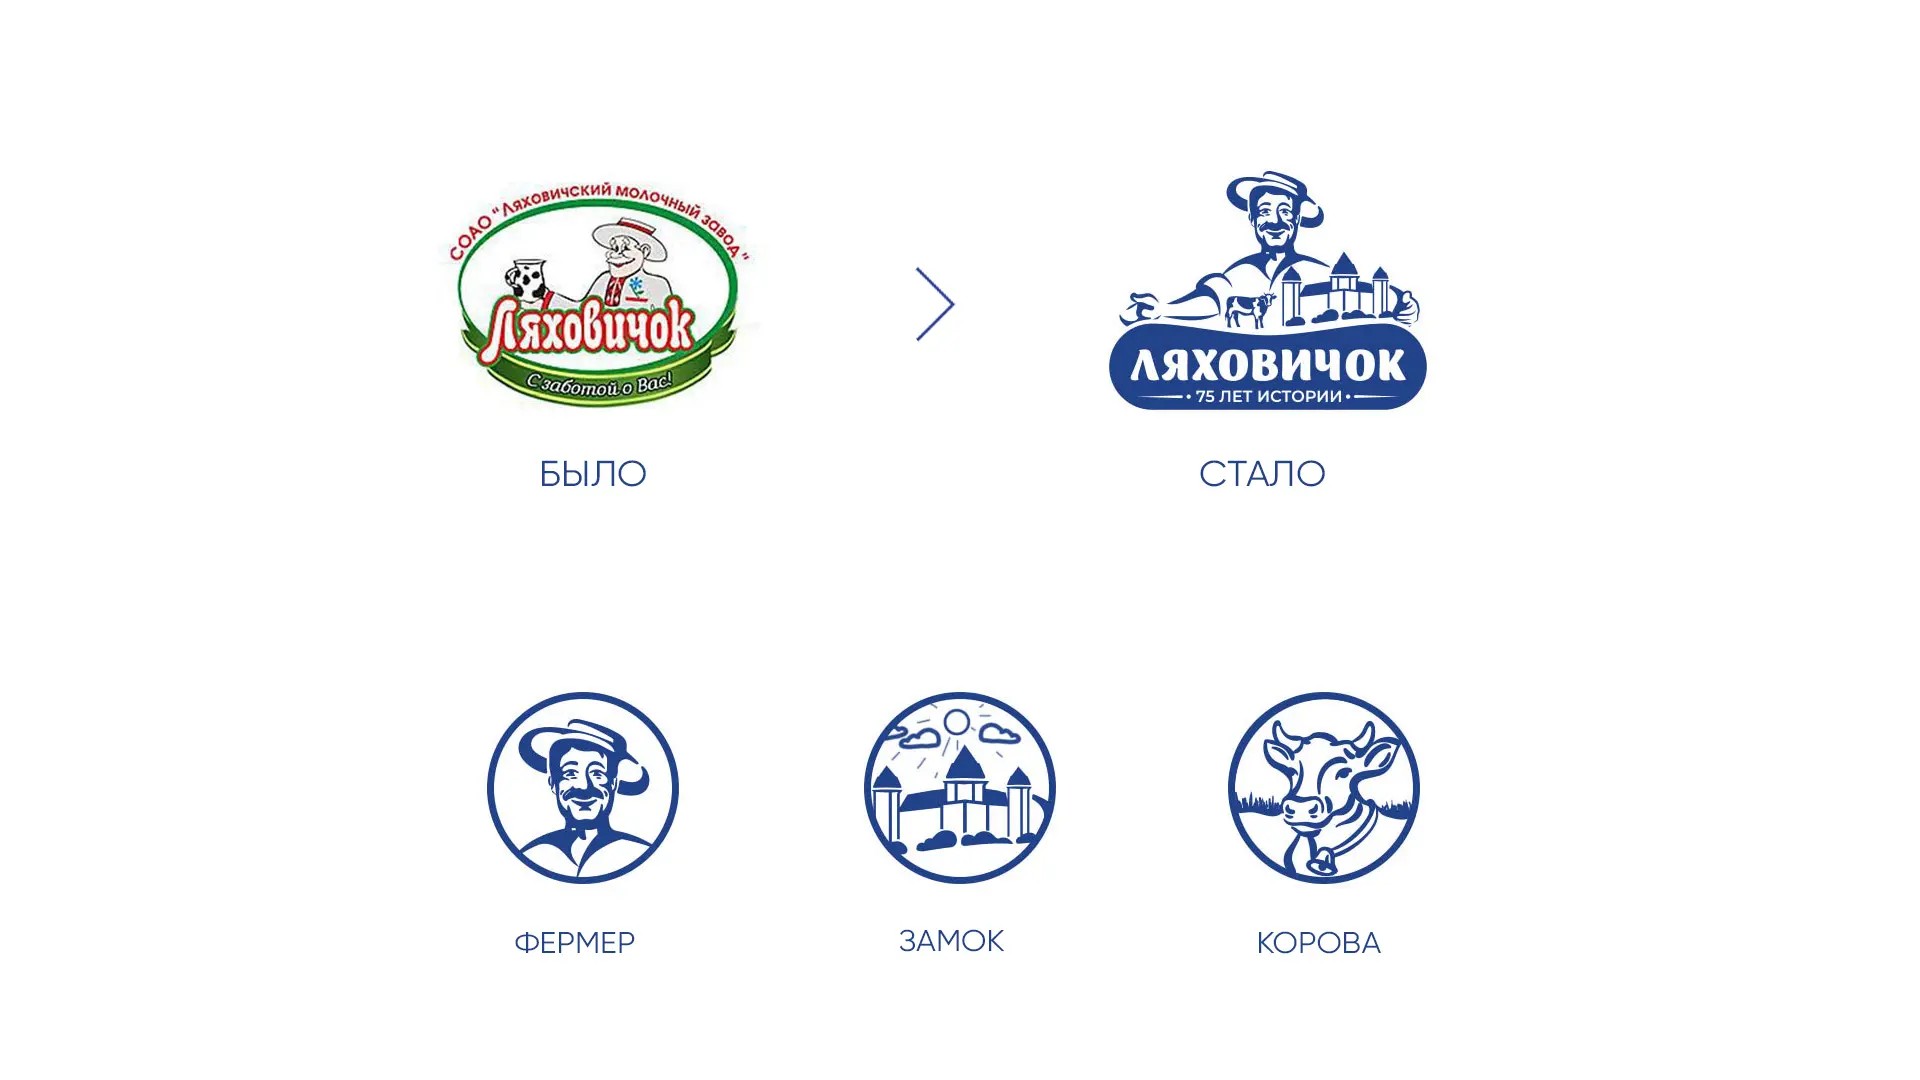 Логотип Ляховичок до и после, иллюстрации фермера, коровы и замок